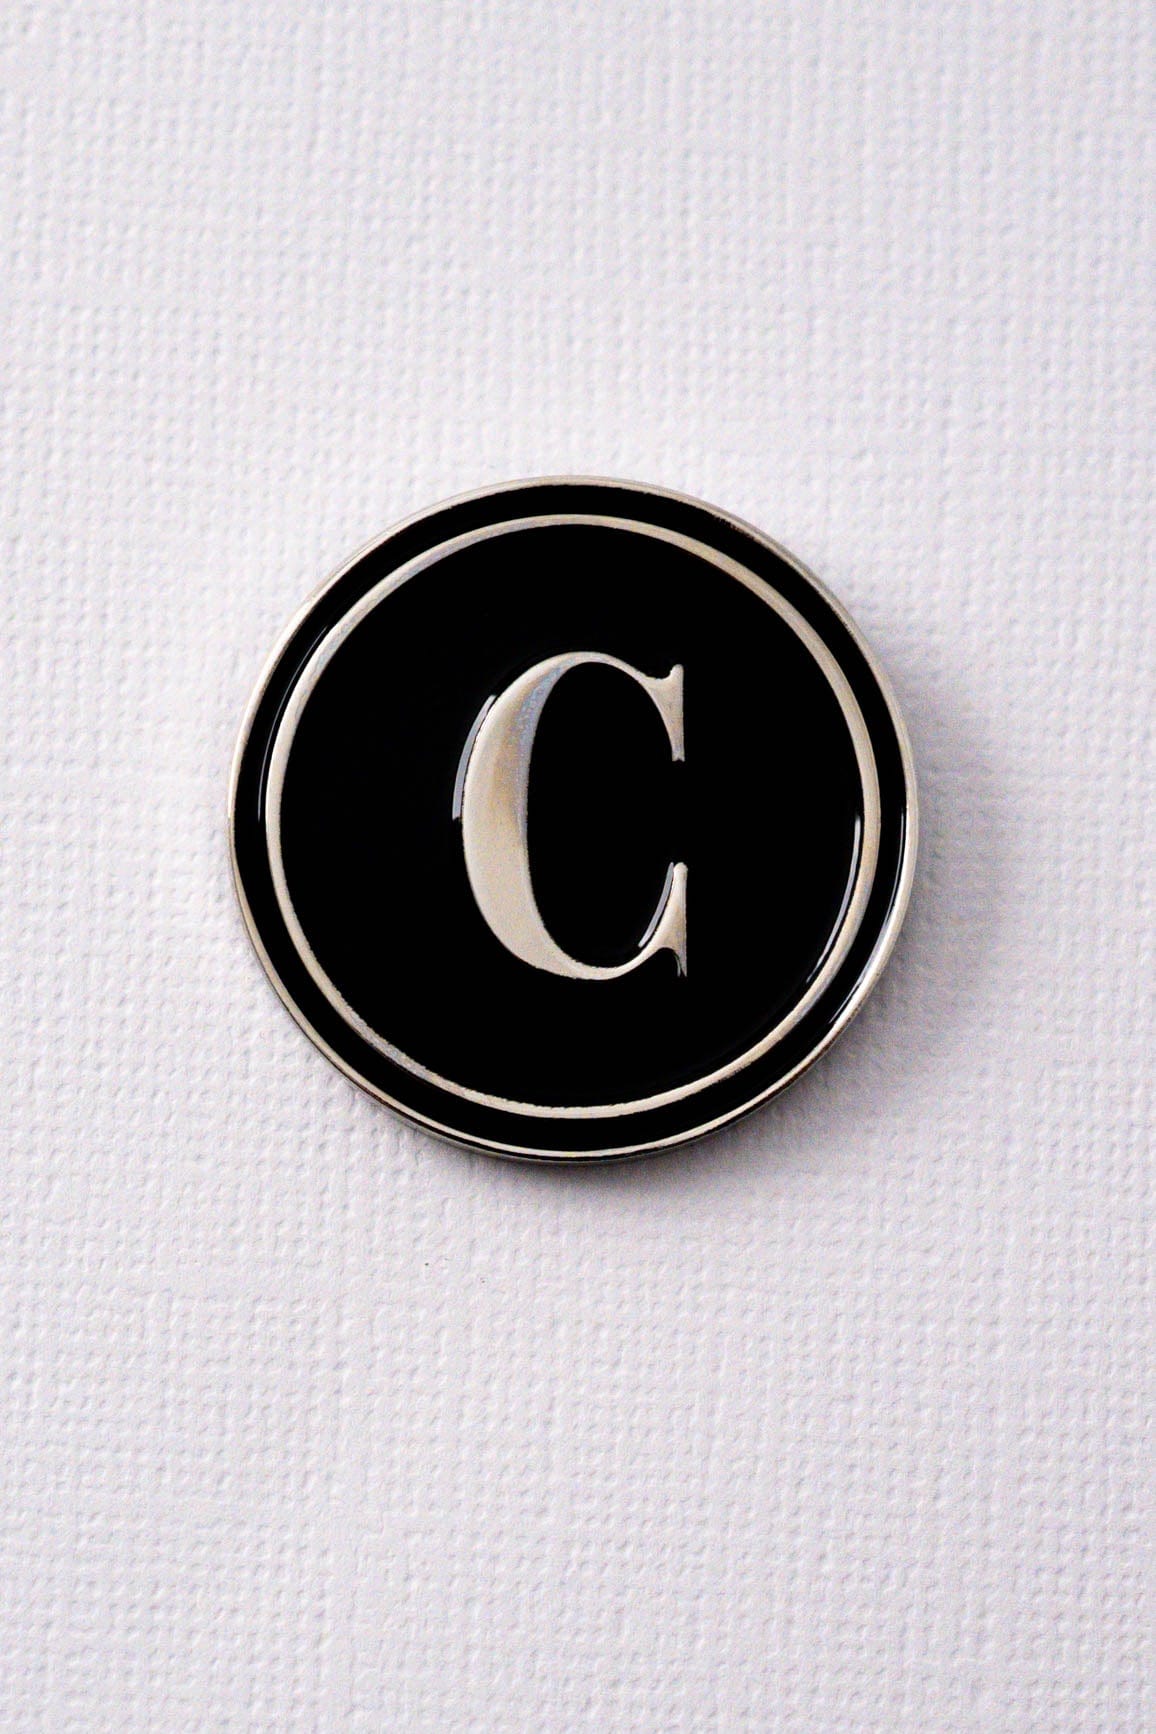 C Alphabet Enamel Pin ENAMEL PIN OS